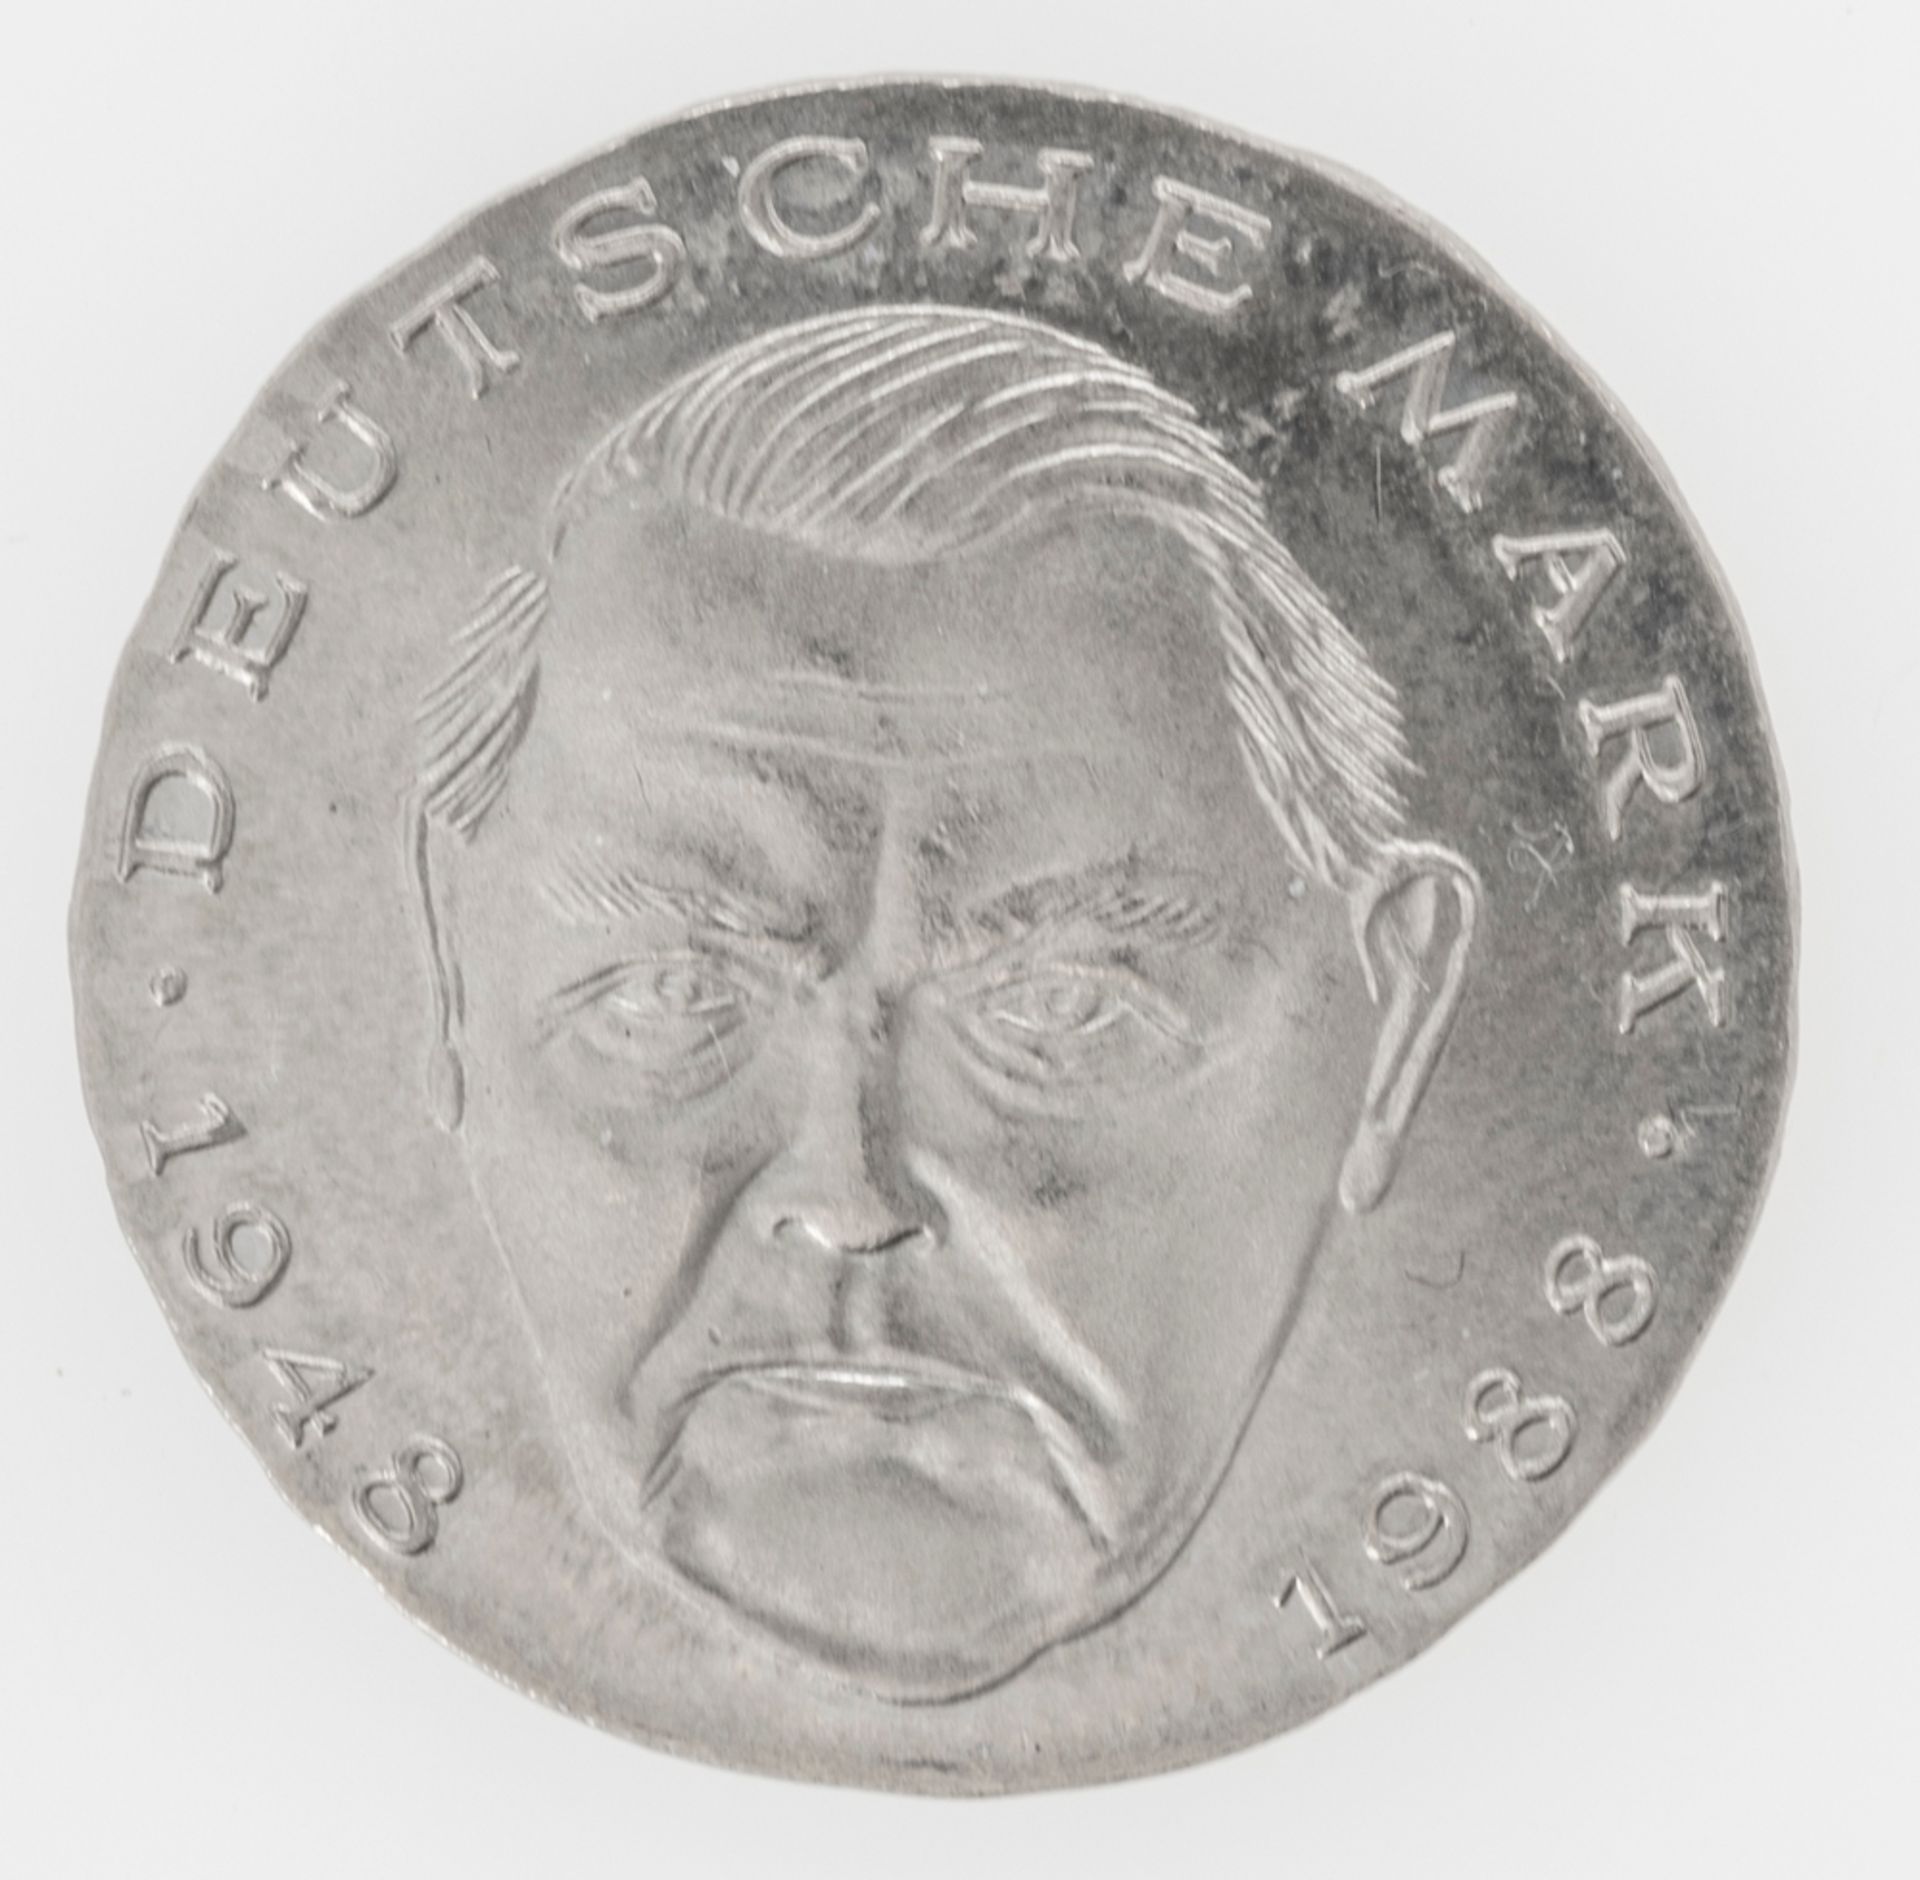 BRD 1988, 2.- DM - Münze, Fehlprägung: Schrötling zu dünn und zu klein (ohne Rand).